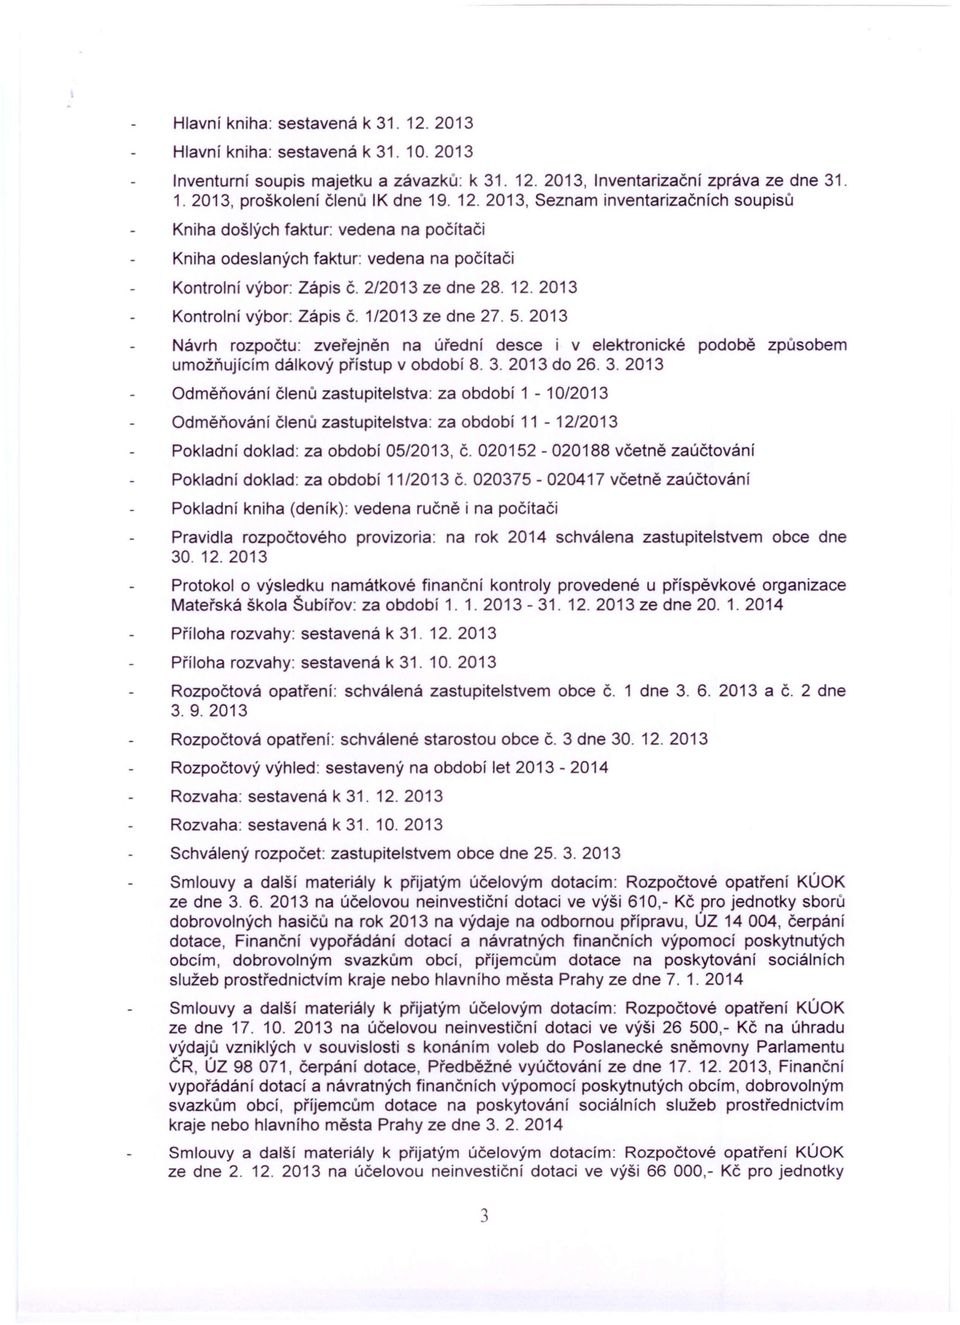 2013 Kontrolní výbor: Zápis Č. 1/2013 ze dne 27.5.2013 Návrh rozpočtu: zveřejněn na úřední desce i v elektronické podobě způsobem umožňujícím dálkový přístup v období 8. 3.